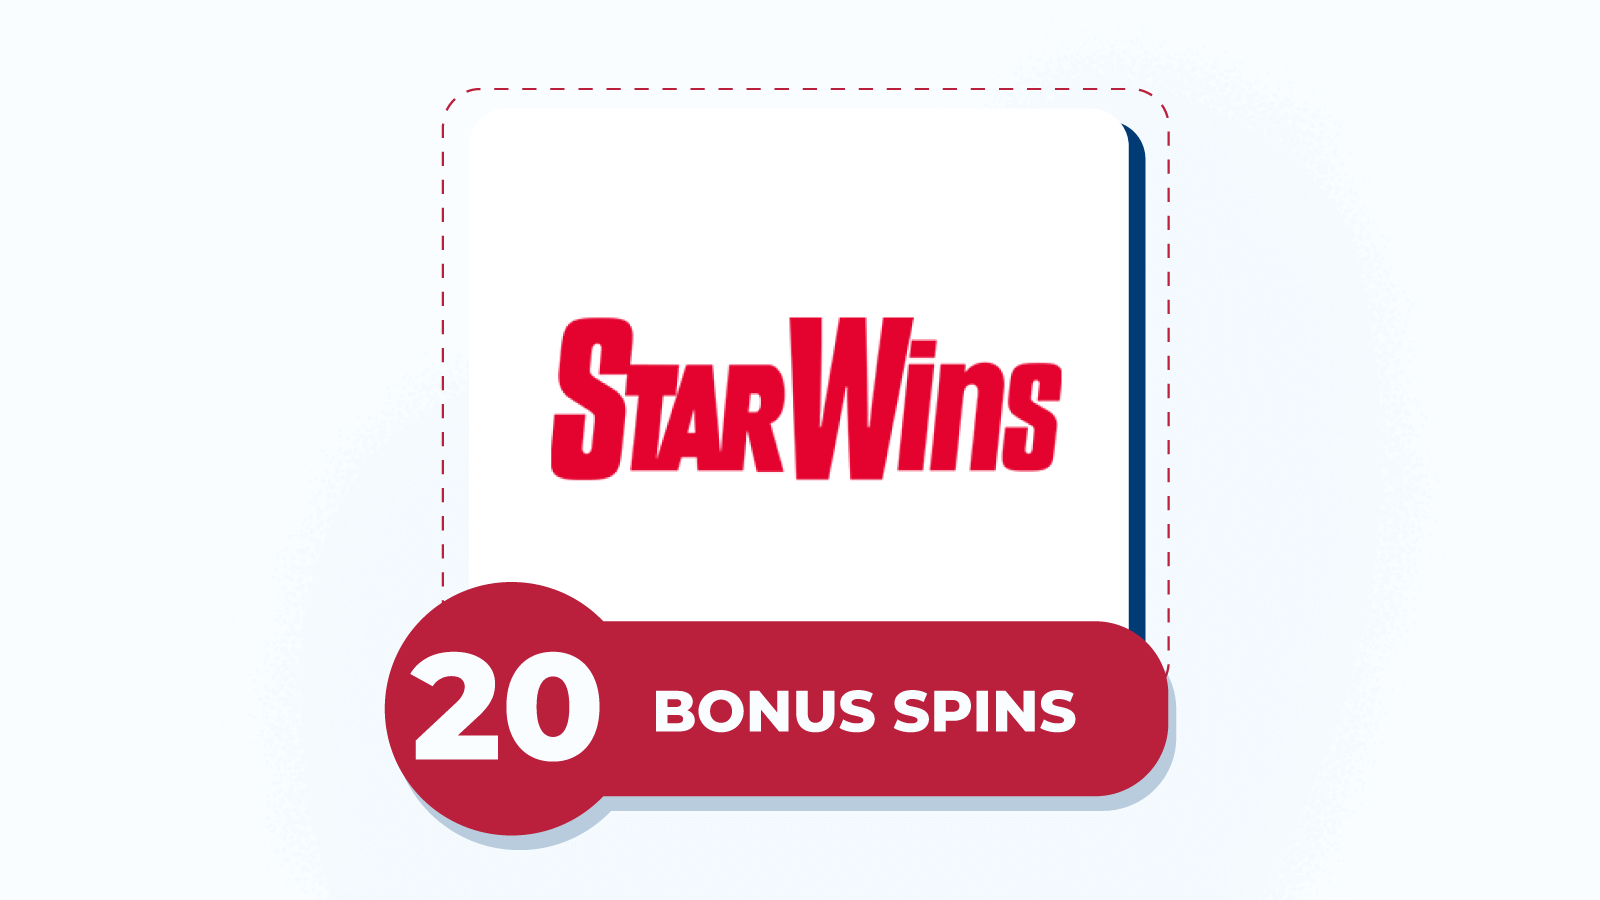 20 bonus spins at Star Wins Casino